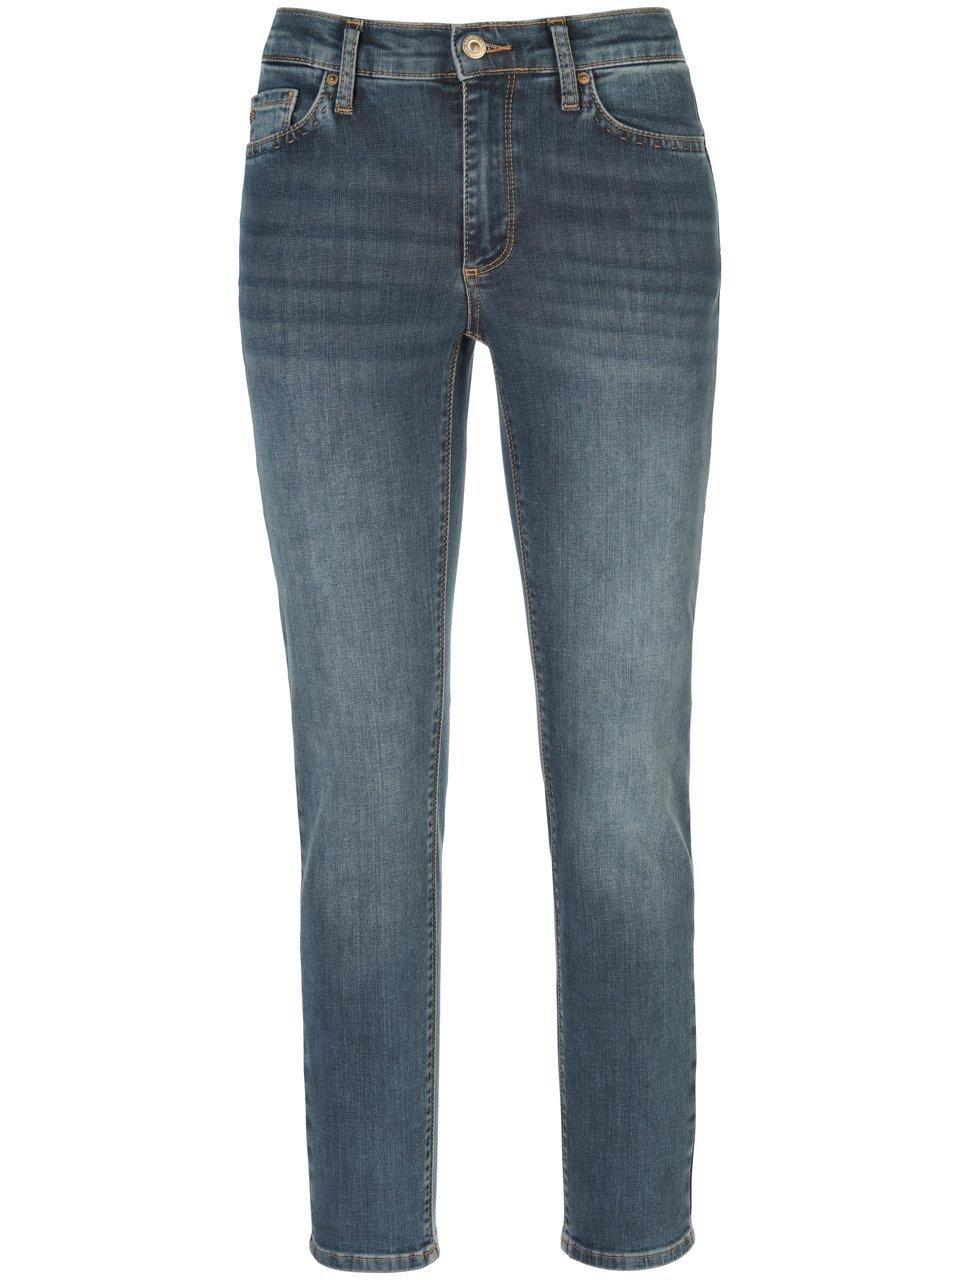 Enkellange jeans model Suzy Van Raffaello Rossi denim